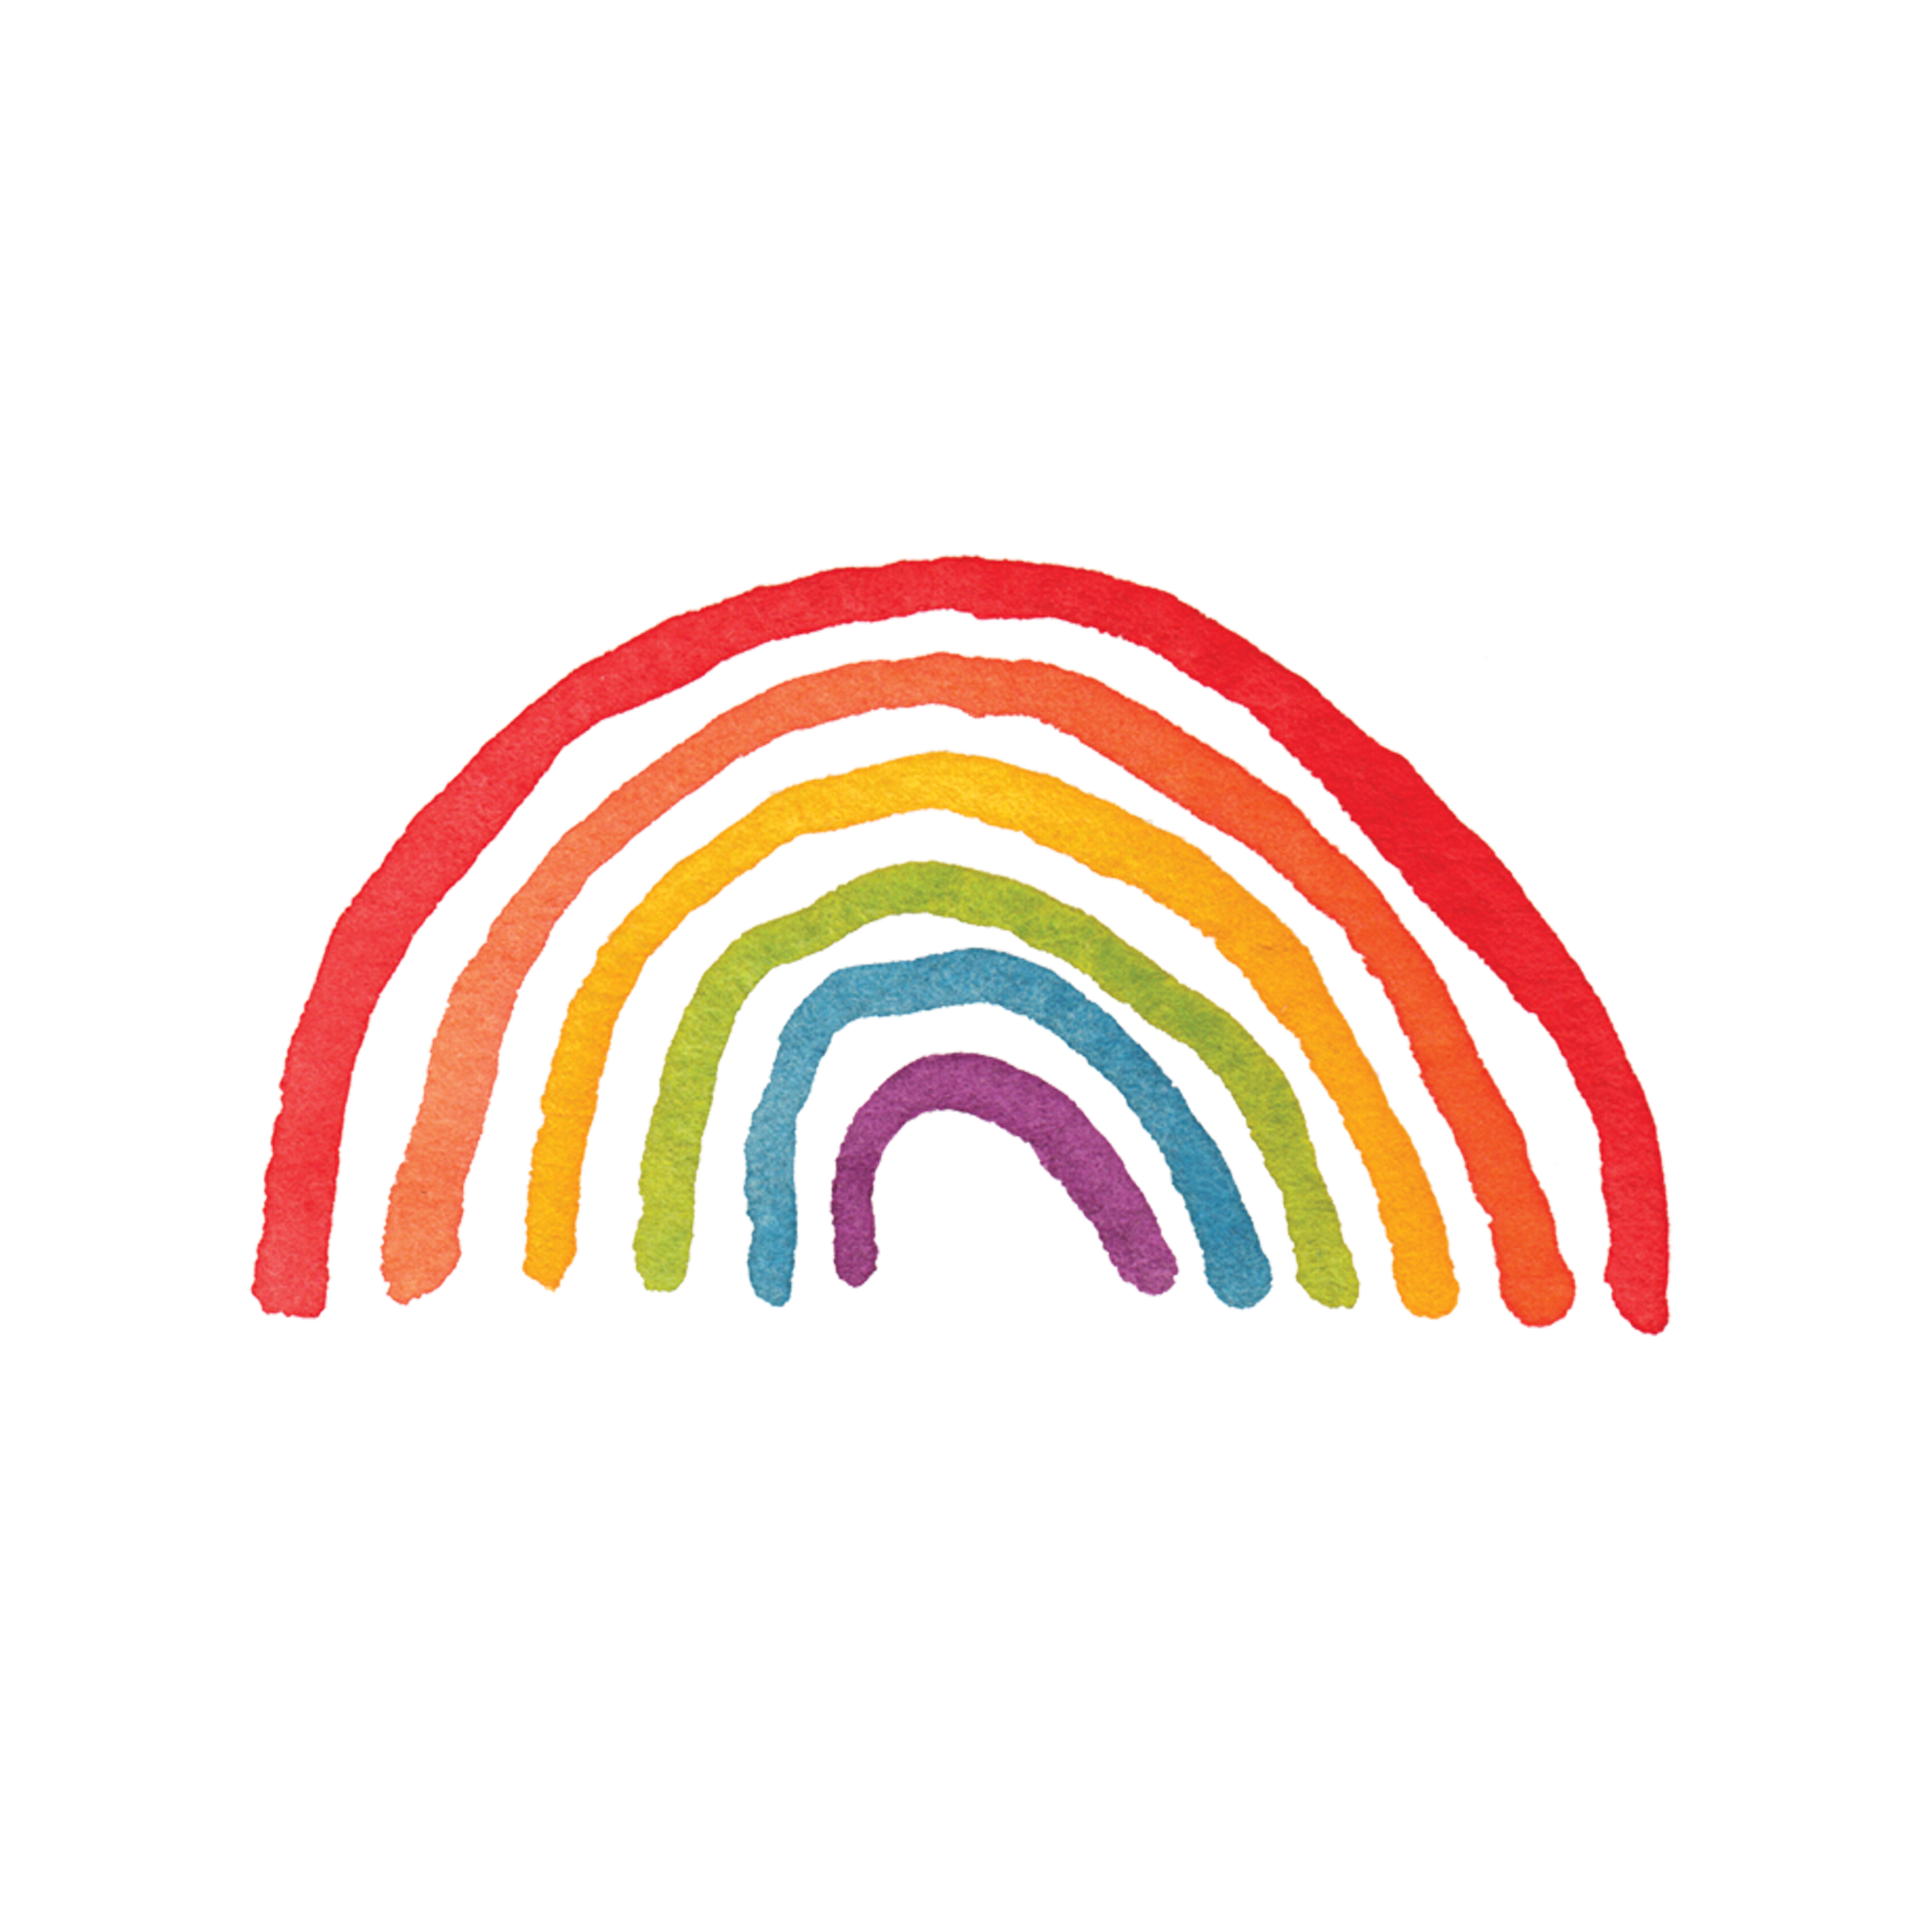 clipart rainbow doodle